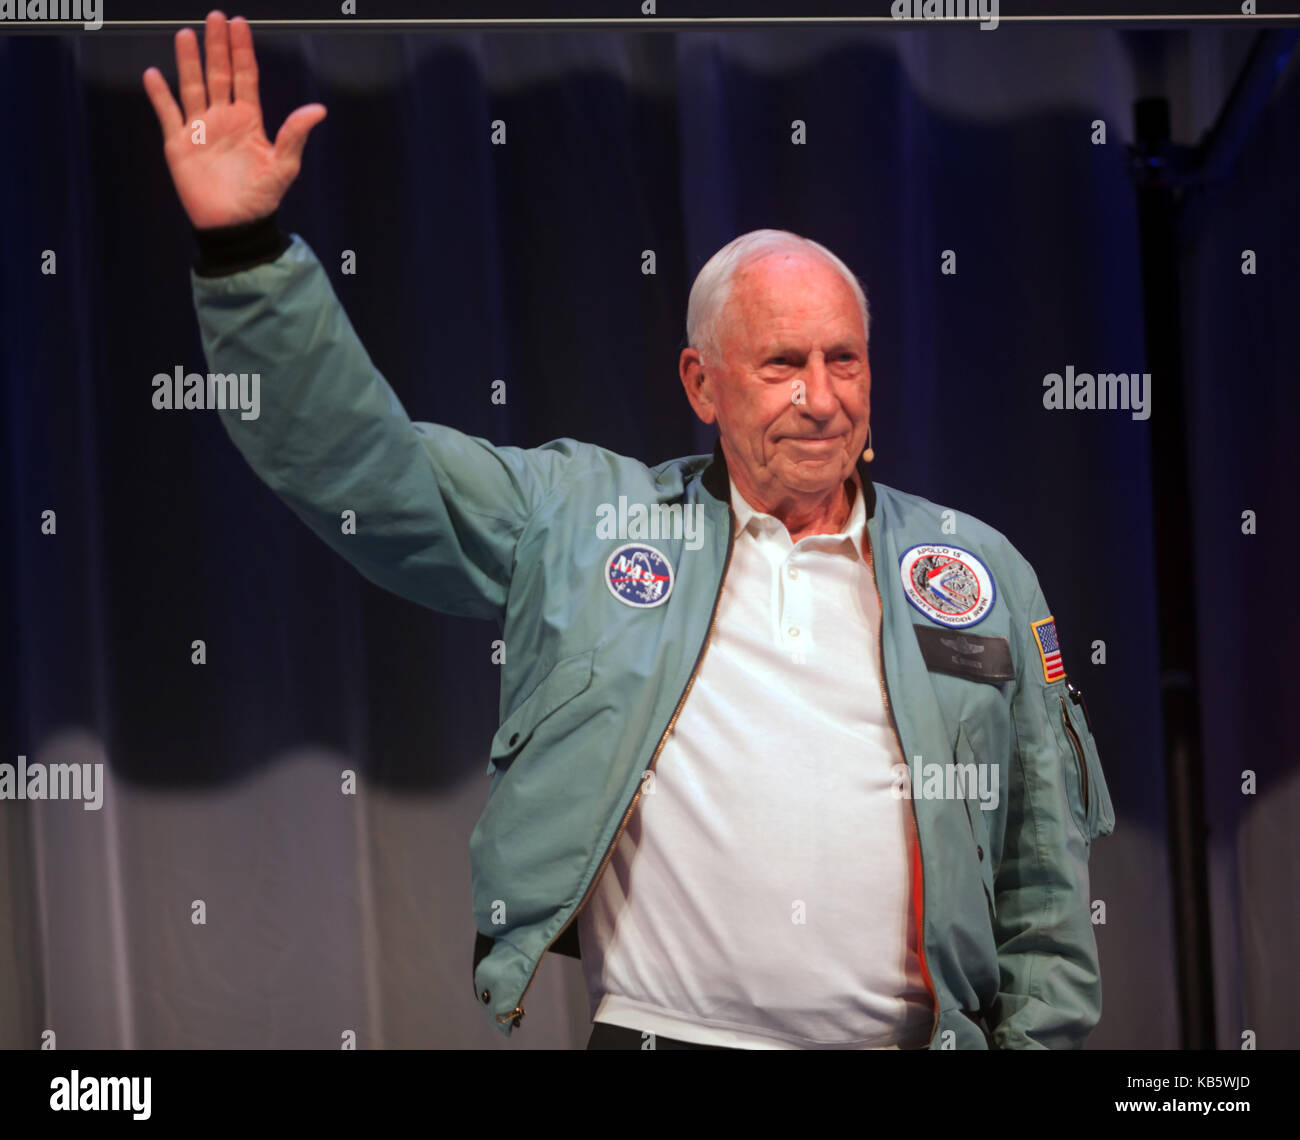 Al worden, astronauta americano e ingegnere, che era il pilota del modulo di comando per l'apollo 15 missione lunare nel 1971. che arrivano sul palco principale al New Scientist live 2017 Foto Stock